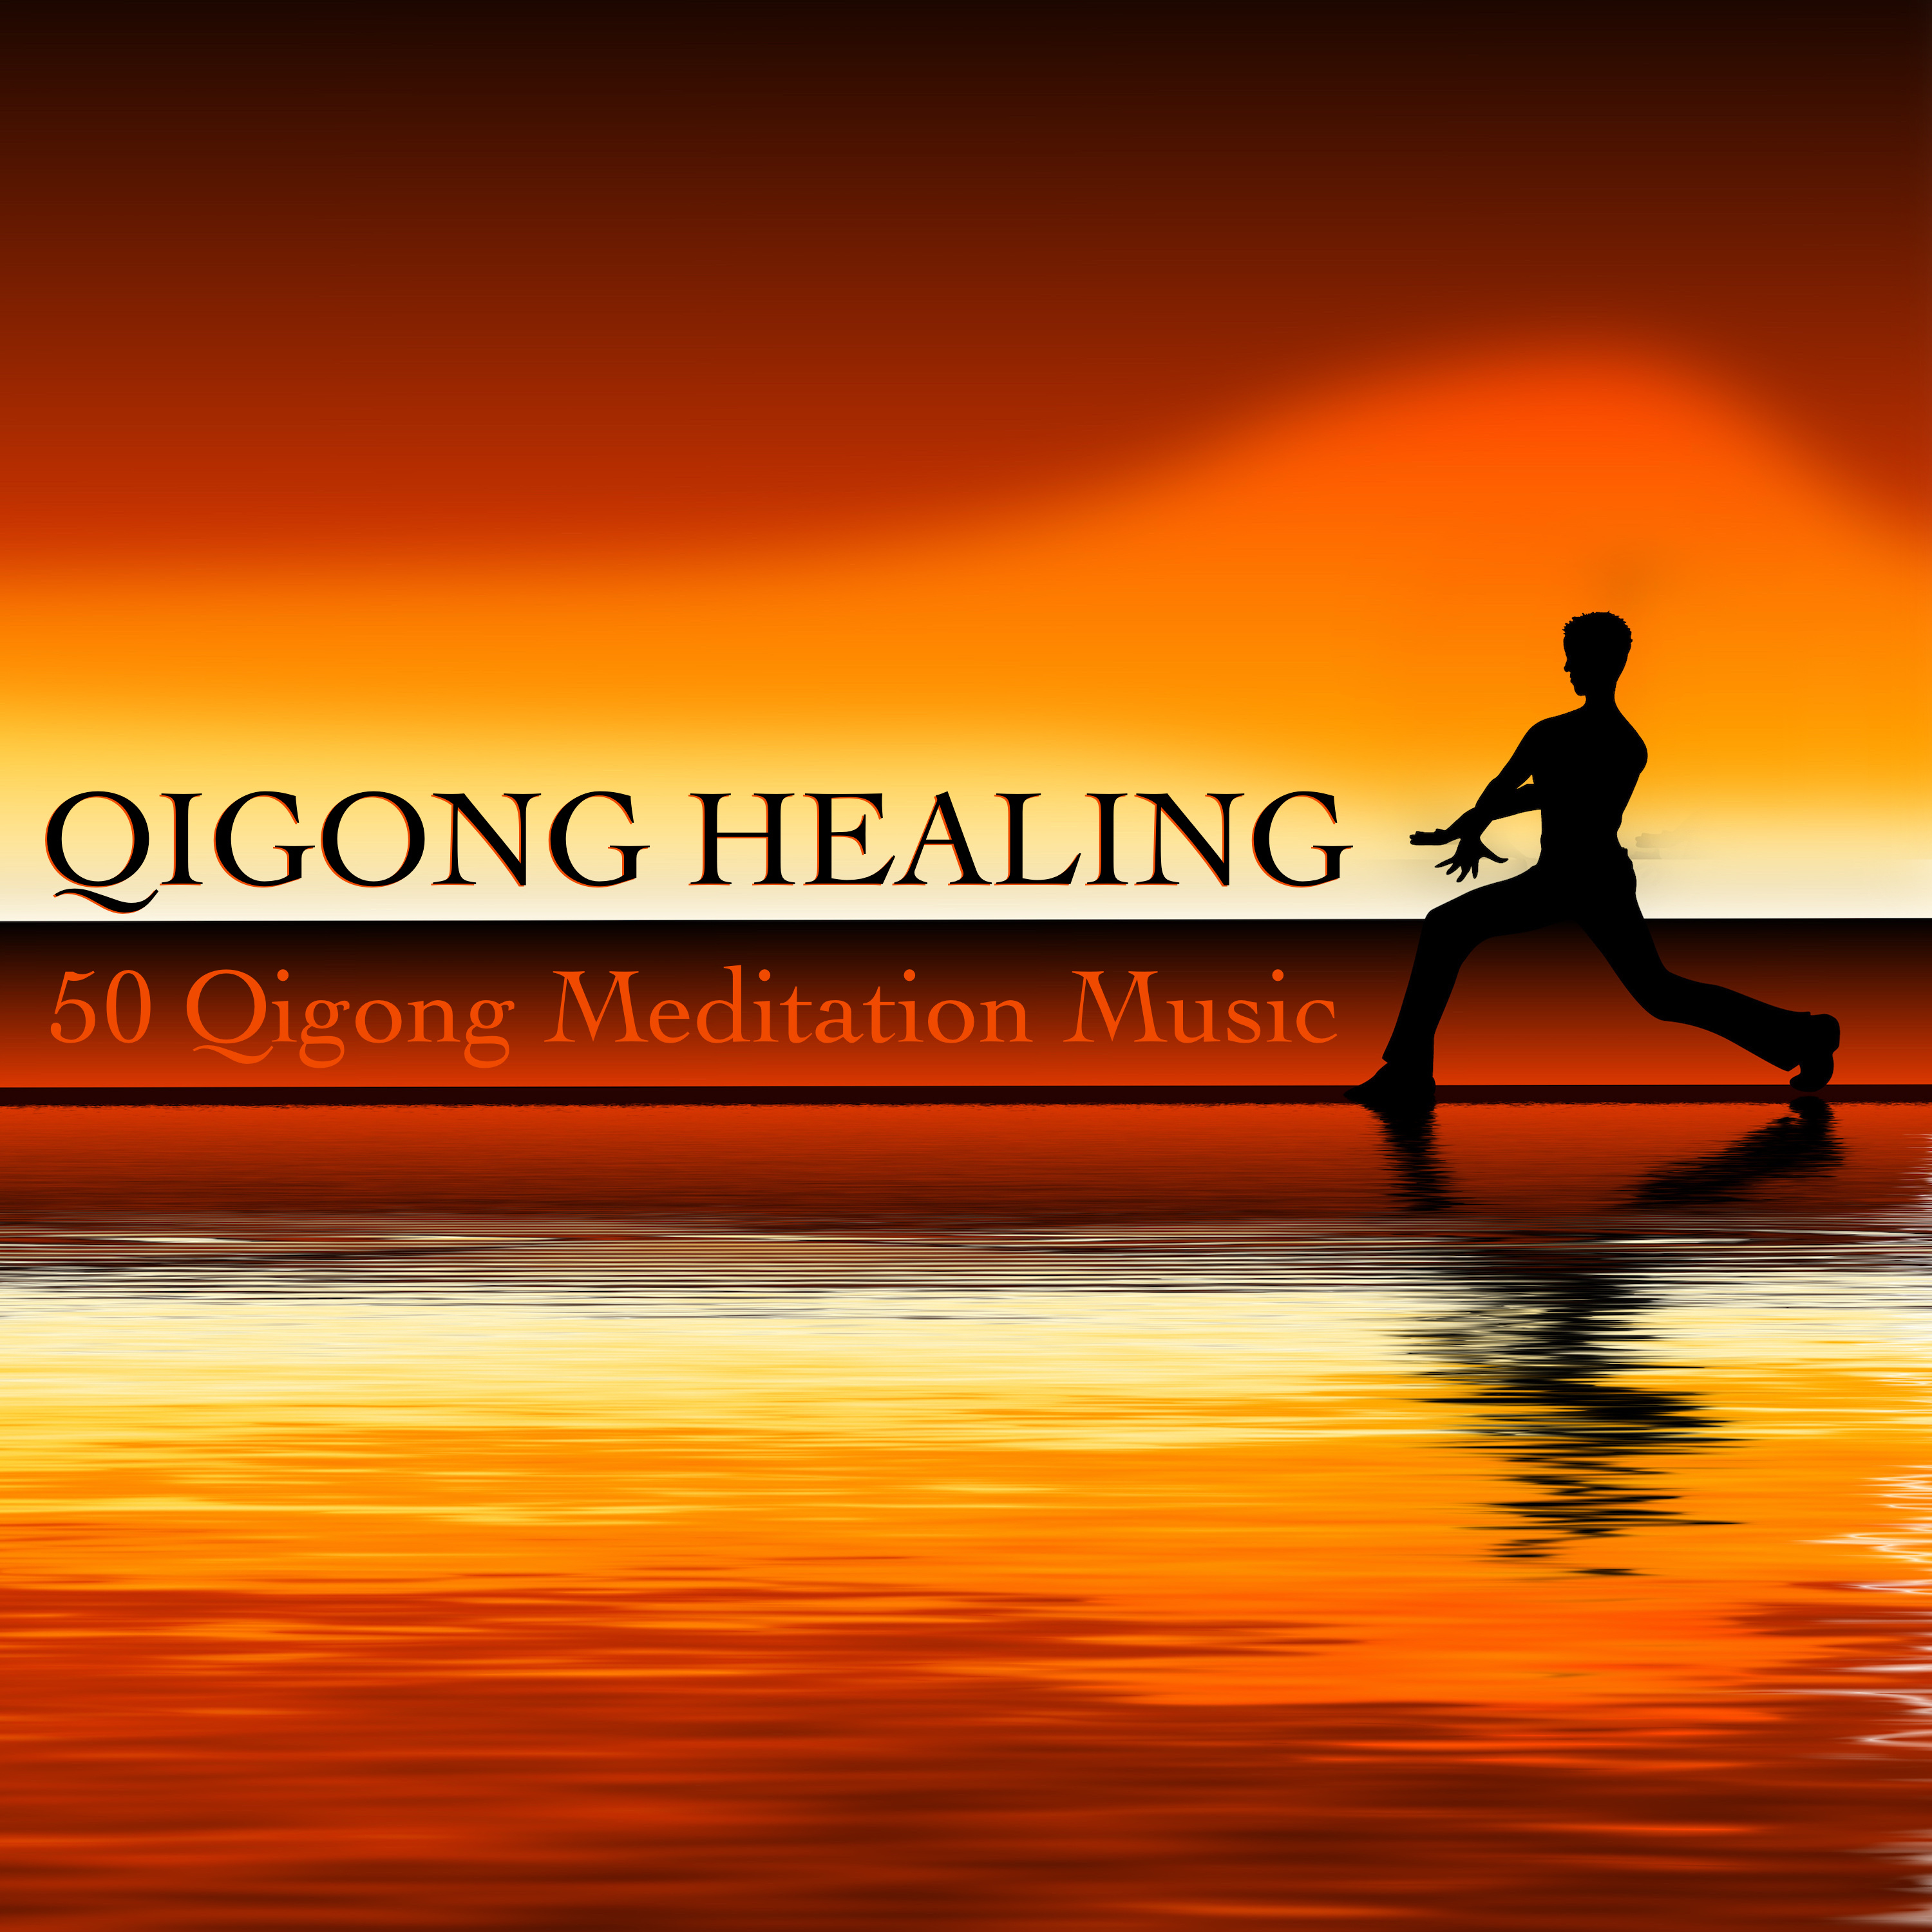 Qigong Healing - 50 Qigong Meditation Music with Oriental Sounds for Taoist Tai Chi and Zen Qigong